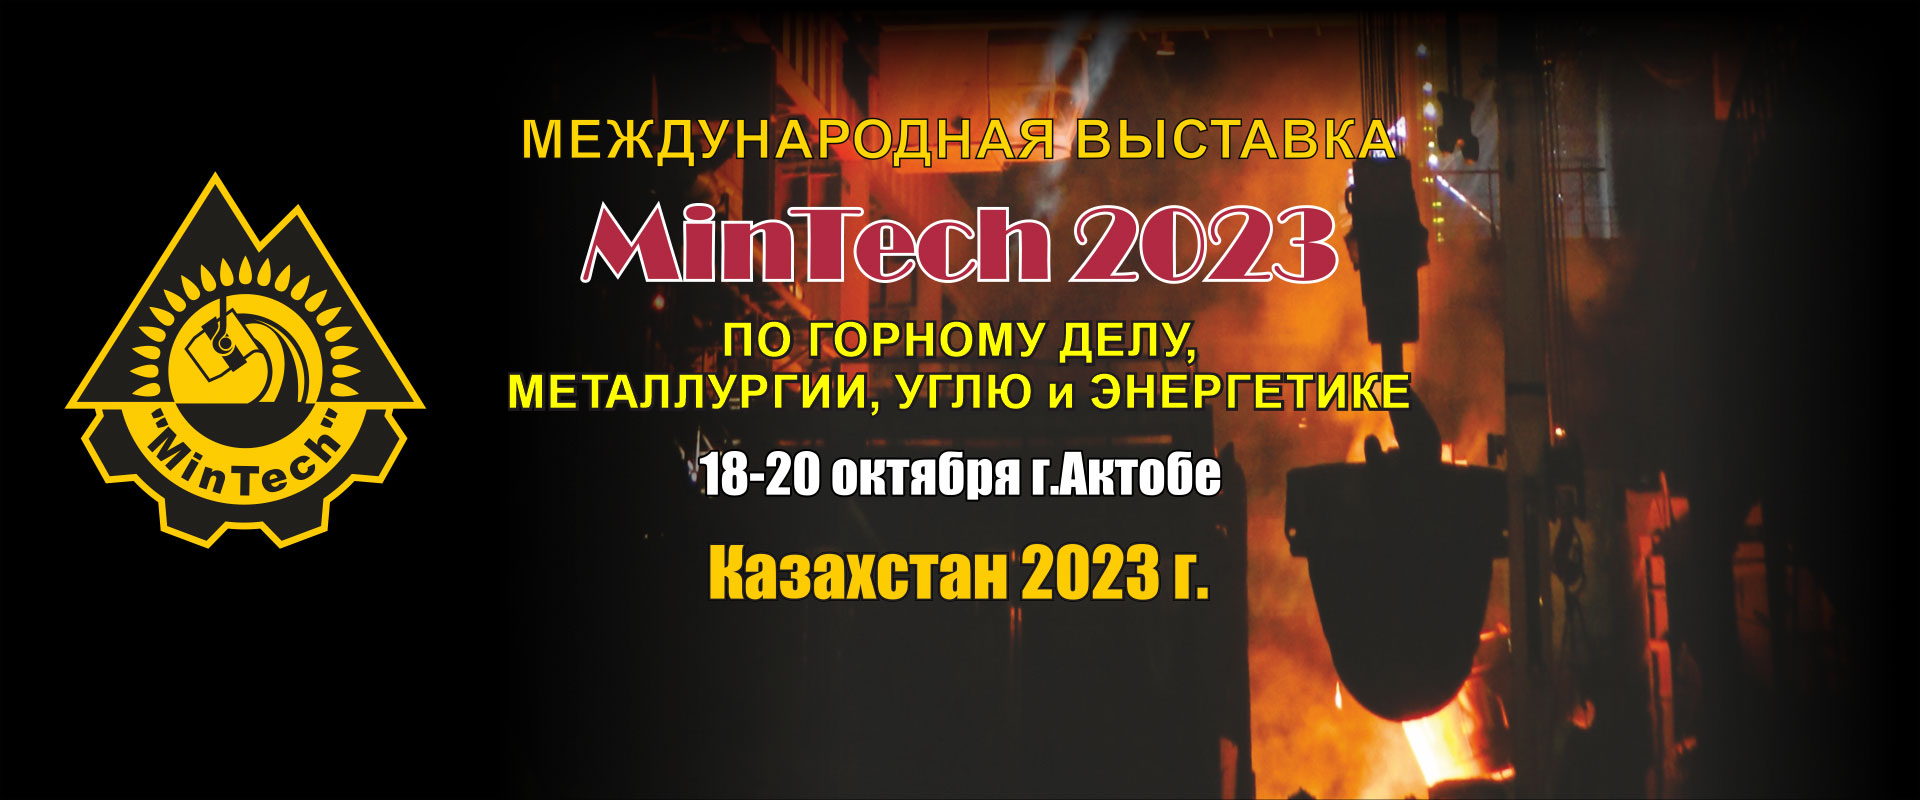 MinTech Актобе 2023 промышленная выставка Казахстан